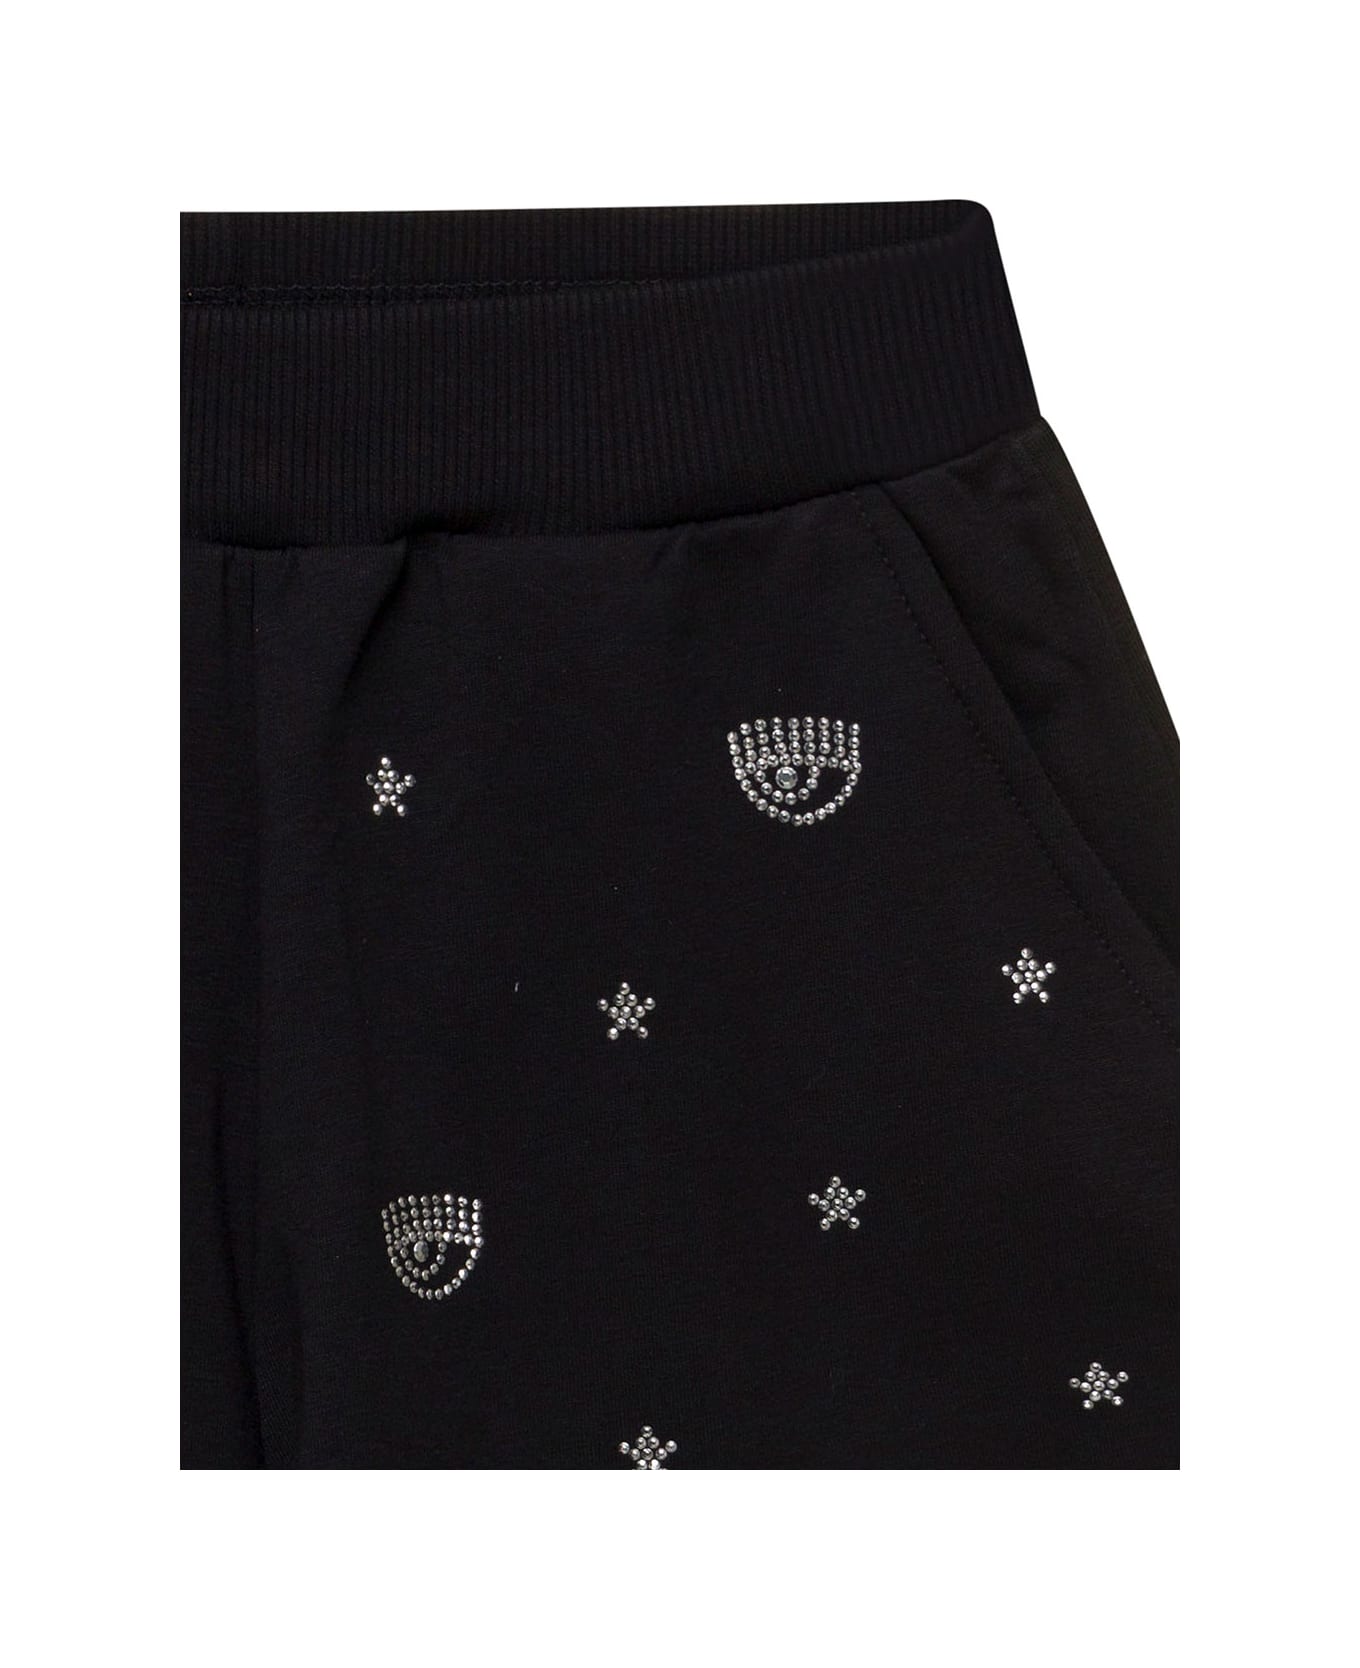 Chiara Ferragni Black Shorts With Rhinestone Embellished Logo In Stretch Cotton Girl - Black